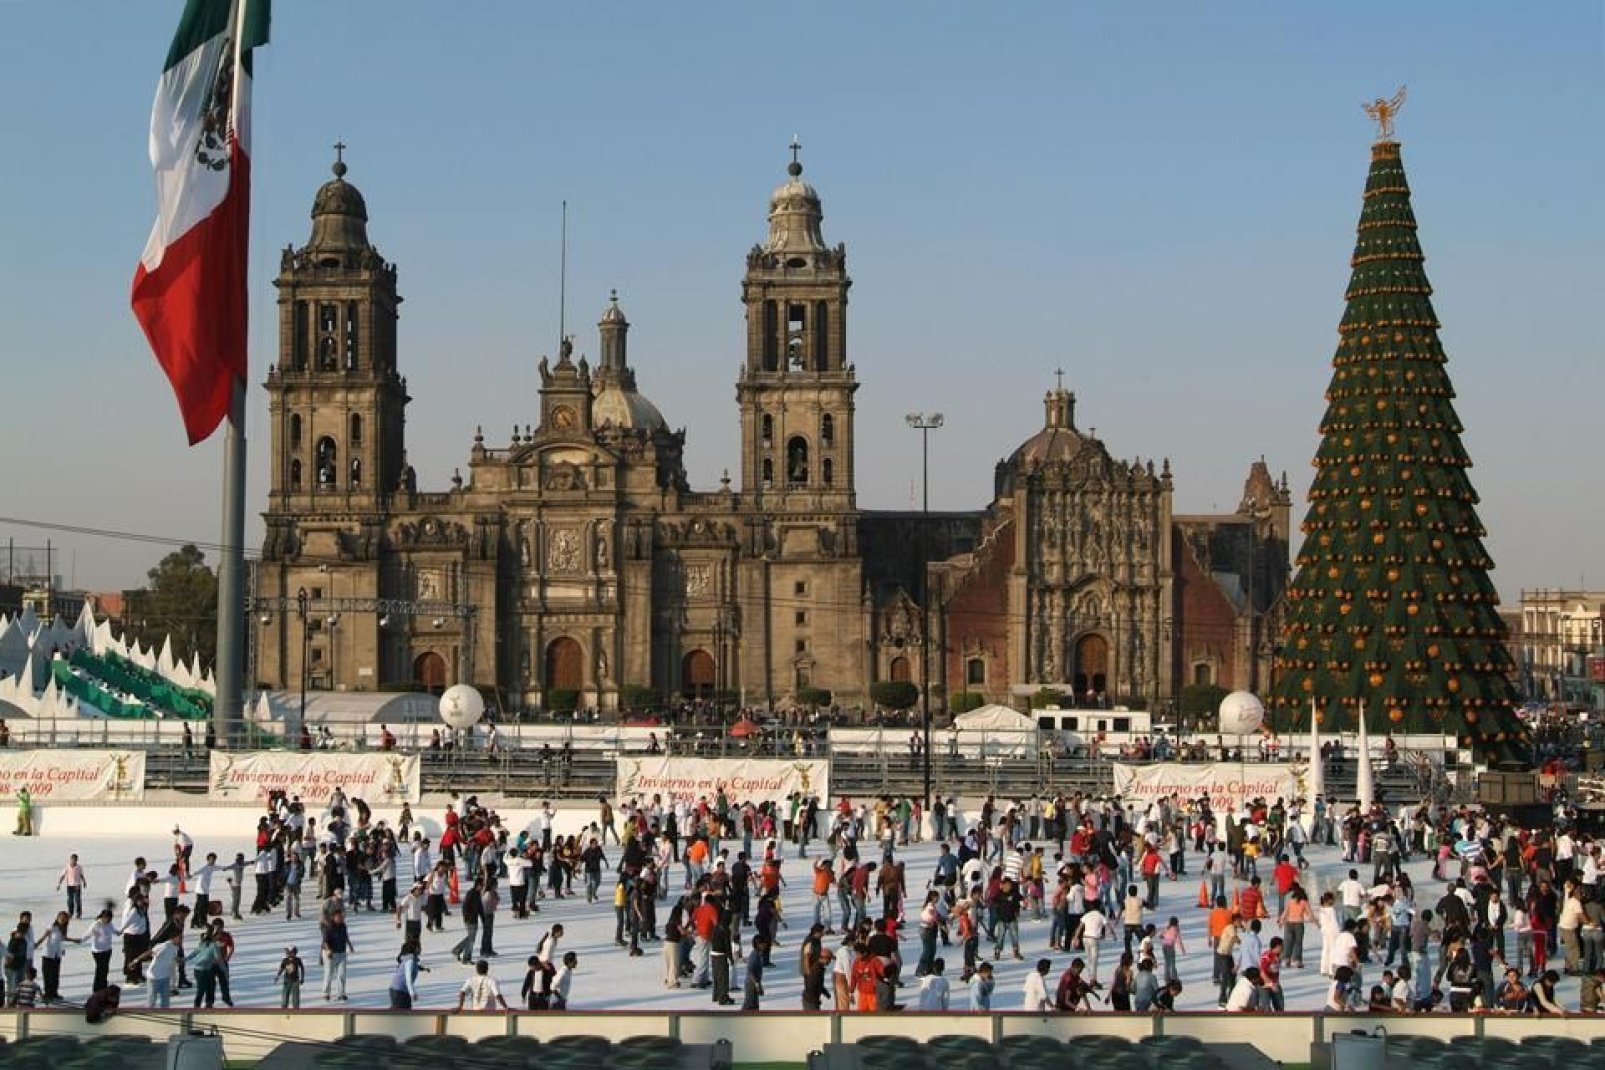 Située sur la place centrale, la cathédrale est la plus grande d'Amérique Latine.